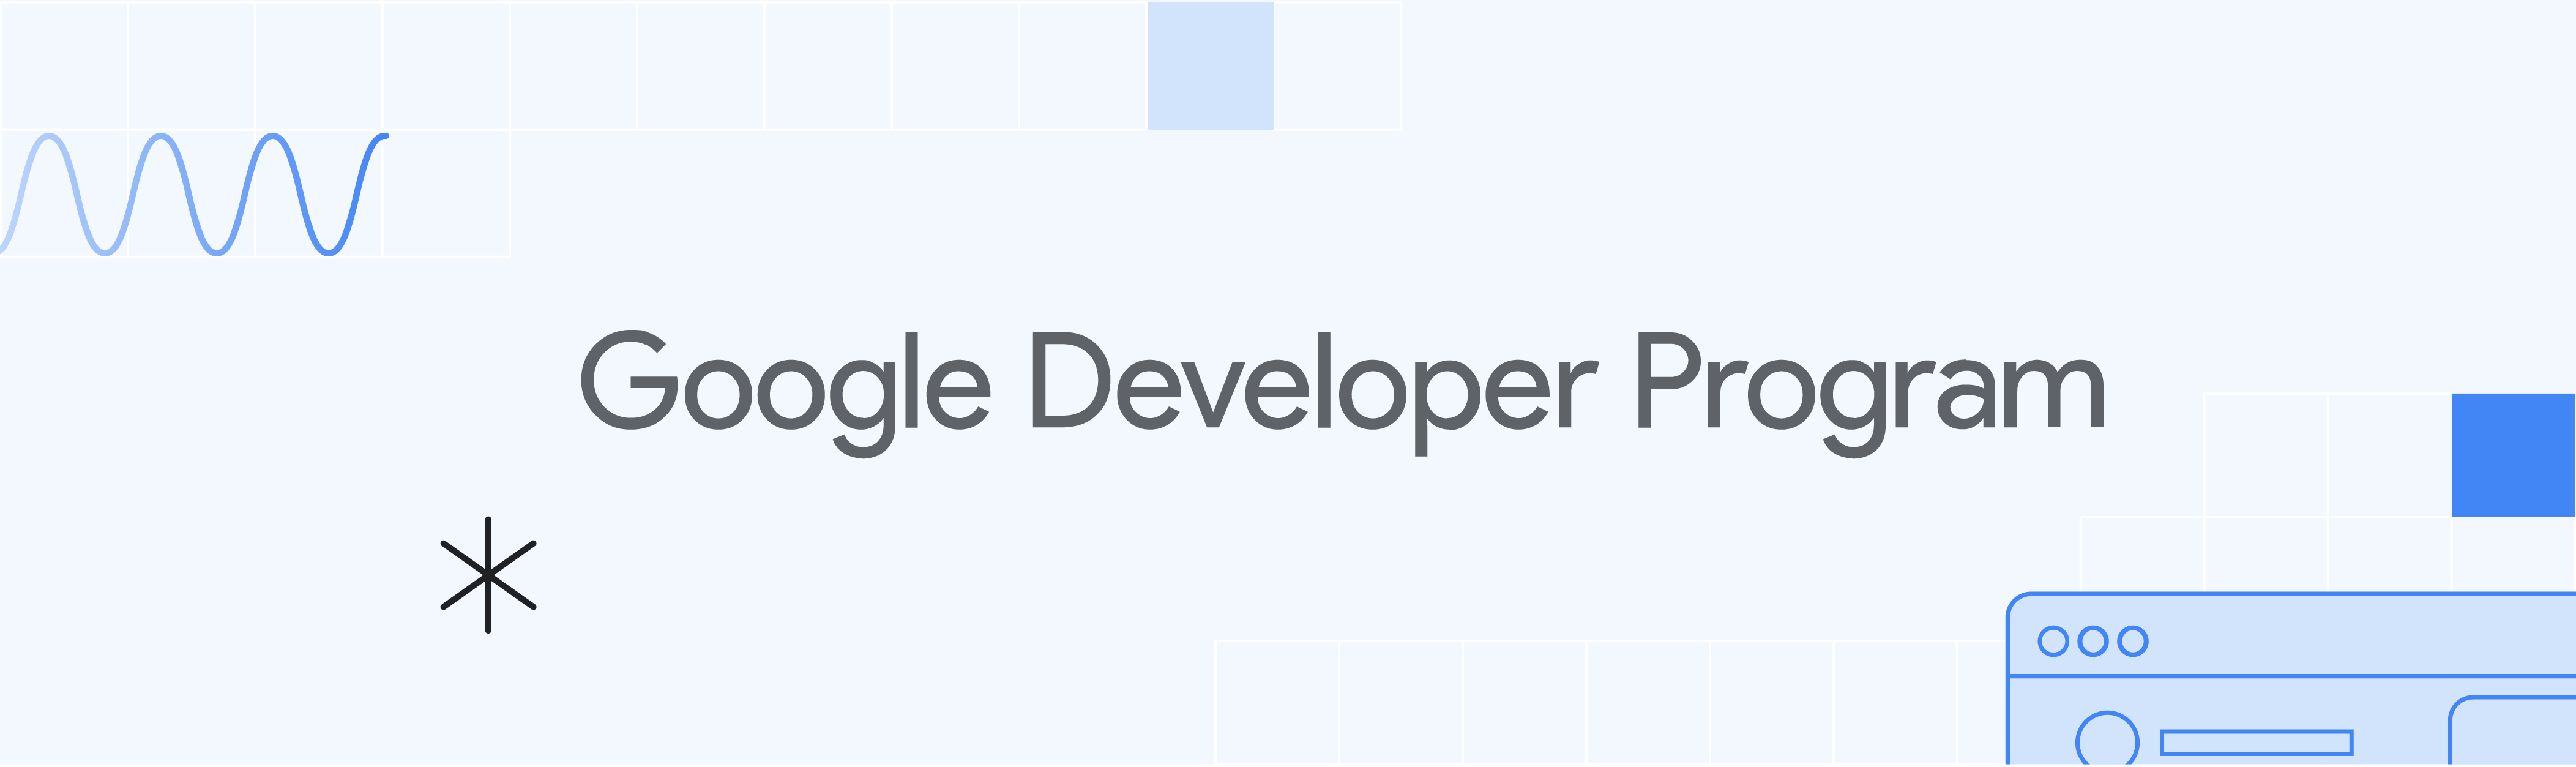 淺藍色橫幅中有「Google Developers Program」和插圖。